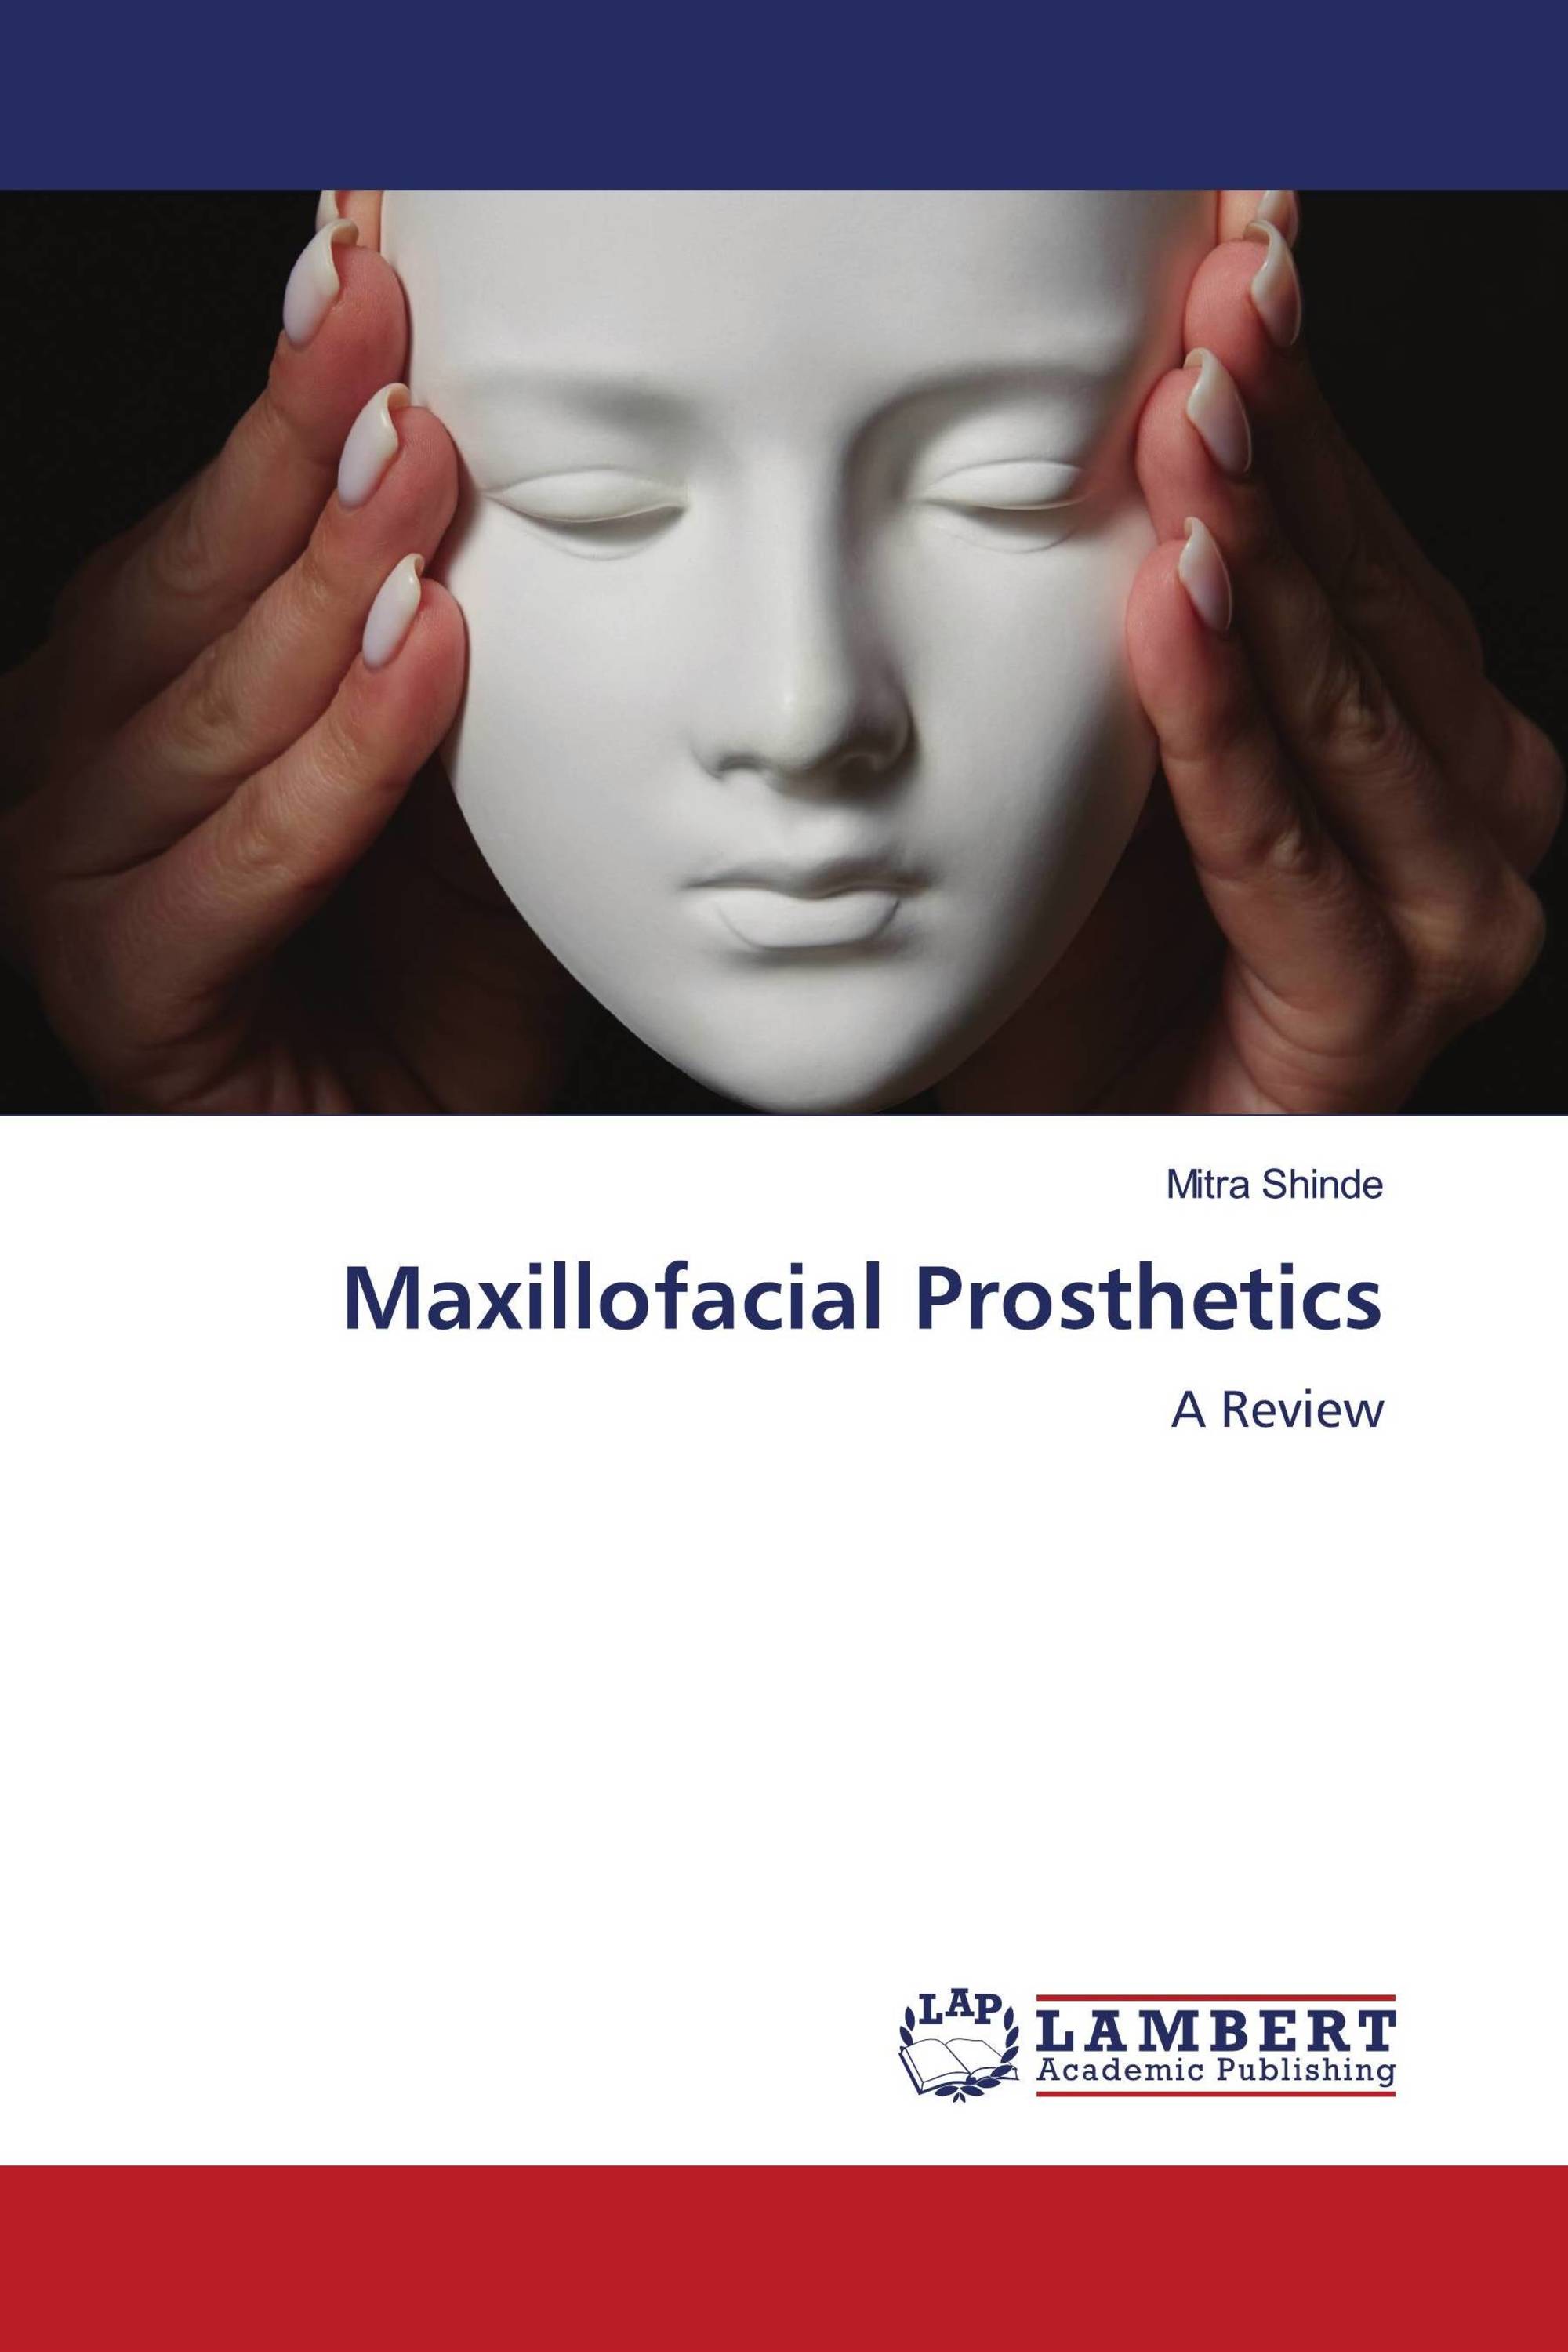 Maxillofacial Prosthetics 978 620 6 15840 0 9786206158400 6206158403 1133